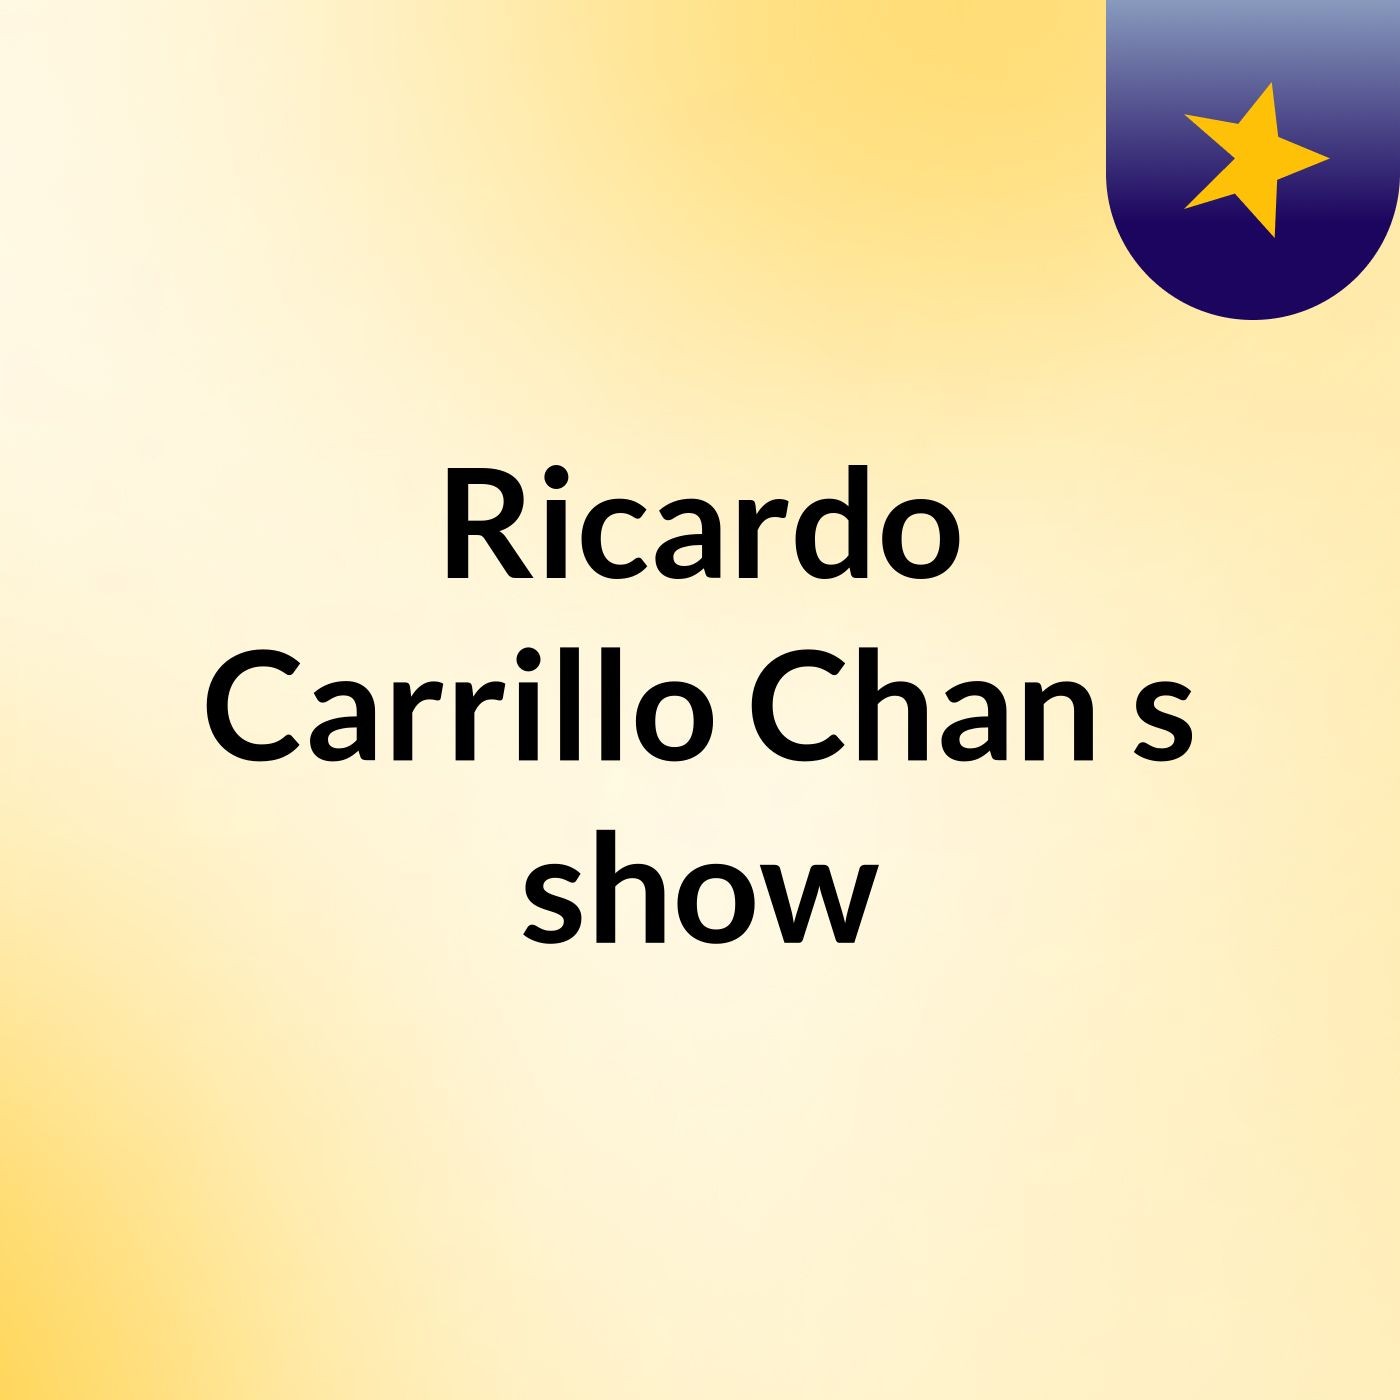 Ricardo Carrillo Chan's show